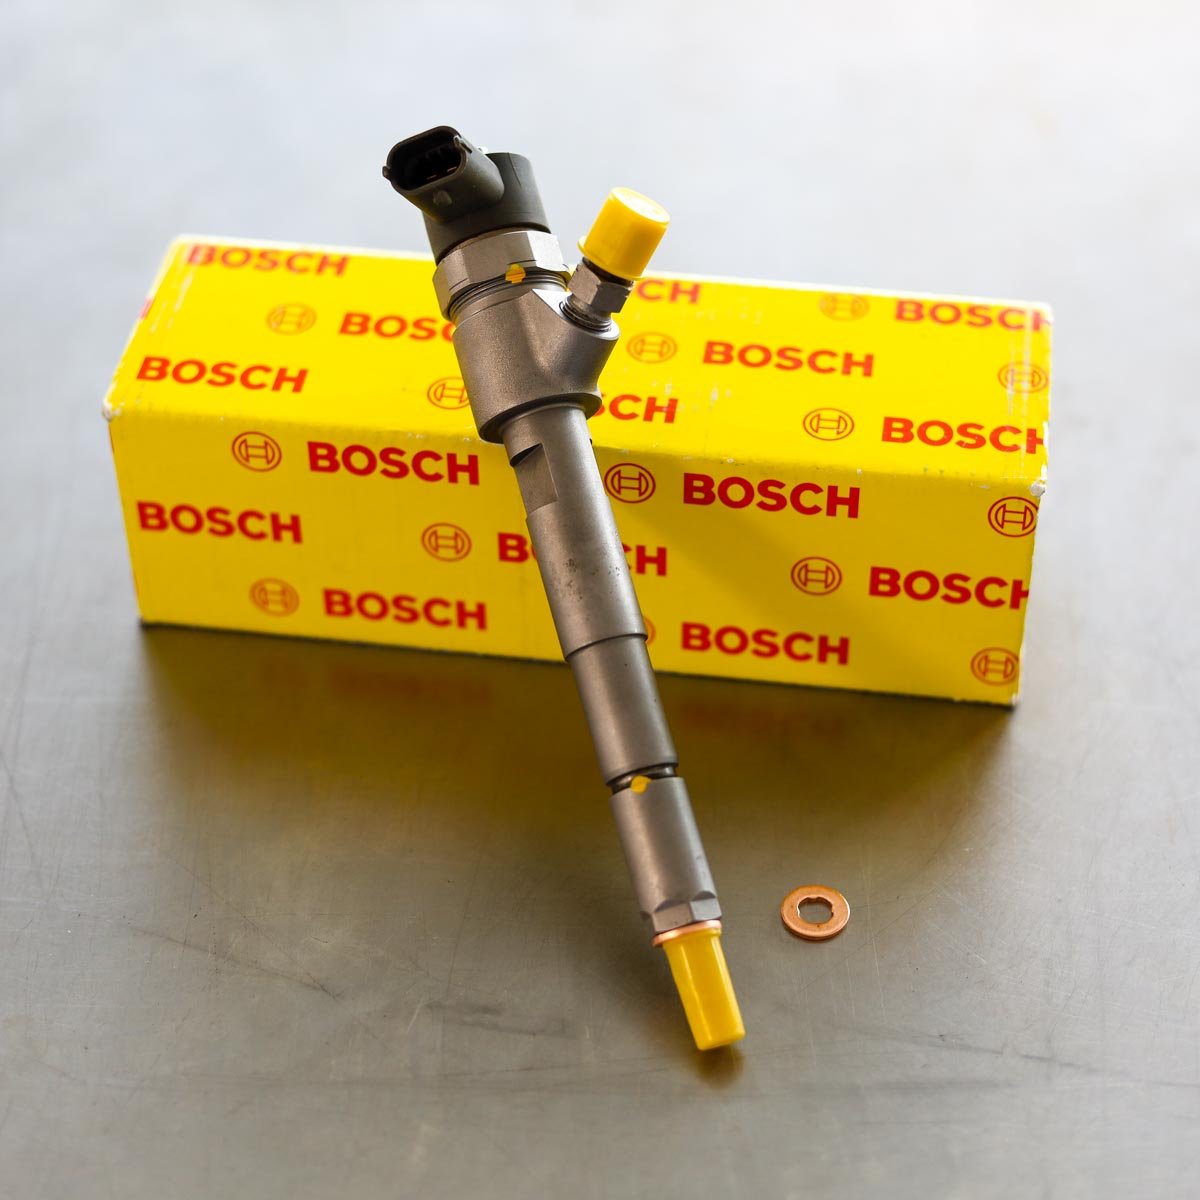 Wtryskiwacz Bosch naprawiony gotowy do nadania do Klienta z gwarancją na 2 lata w korzystnej cenie